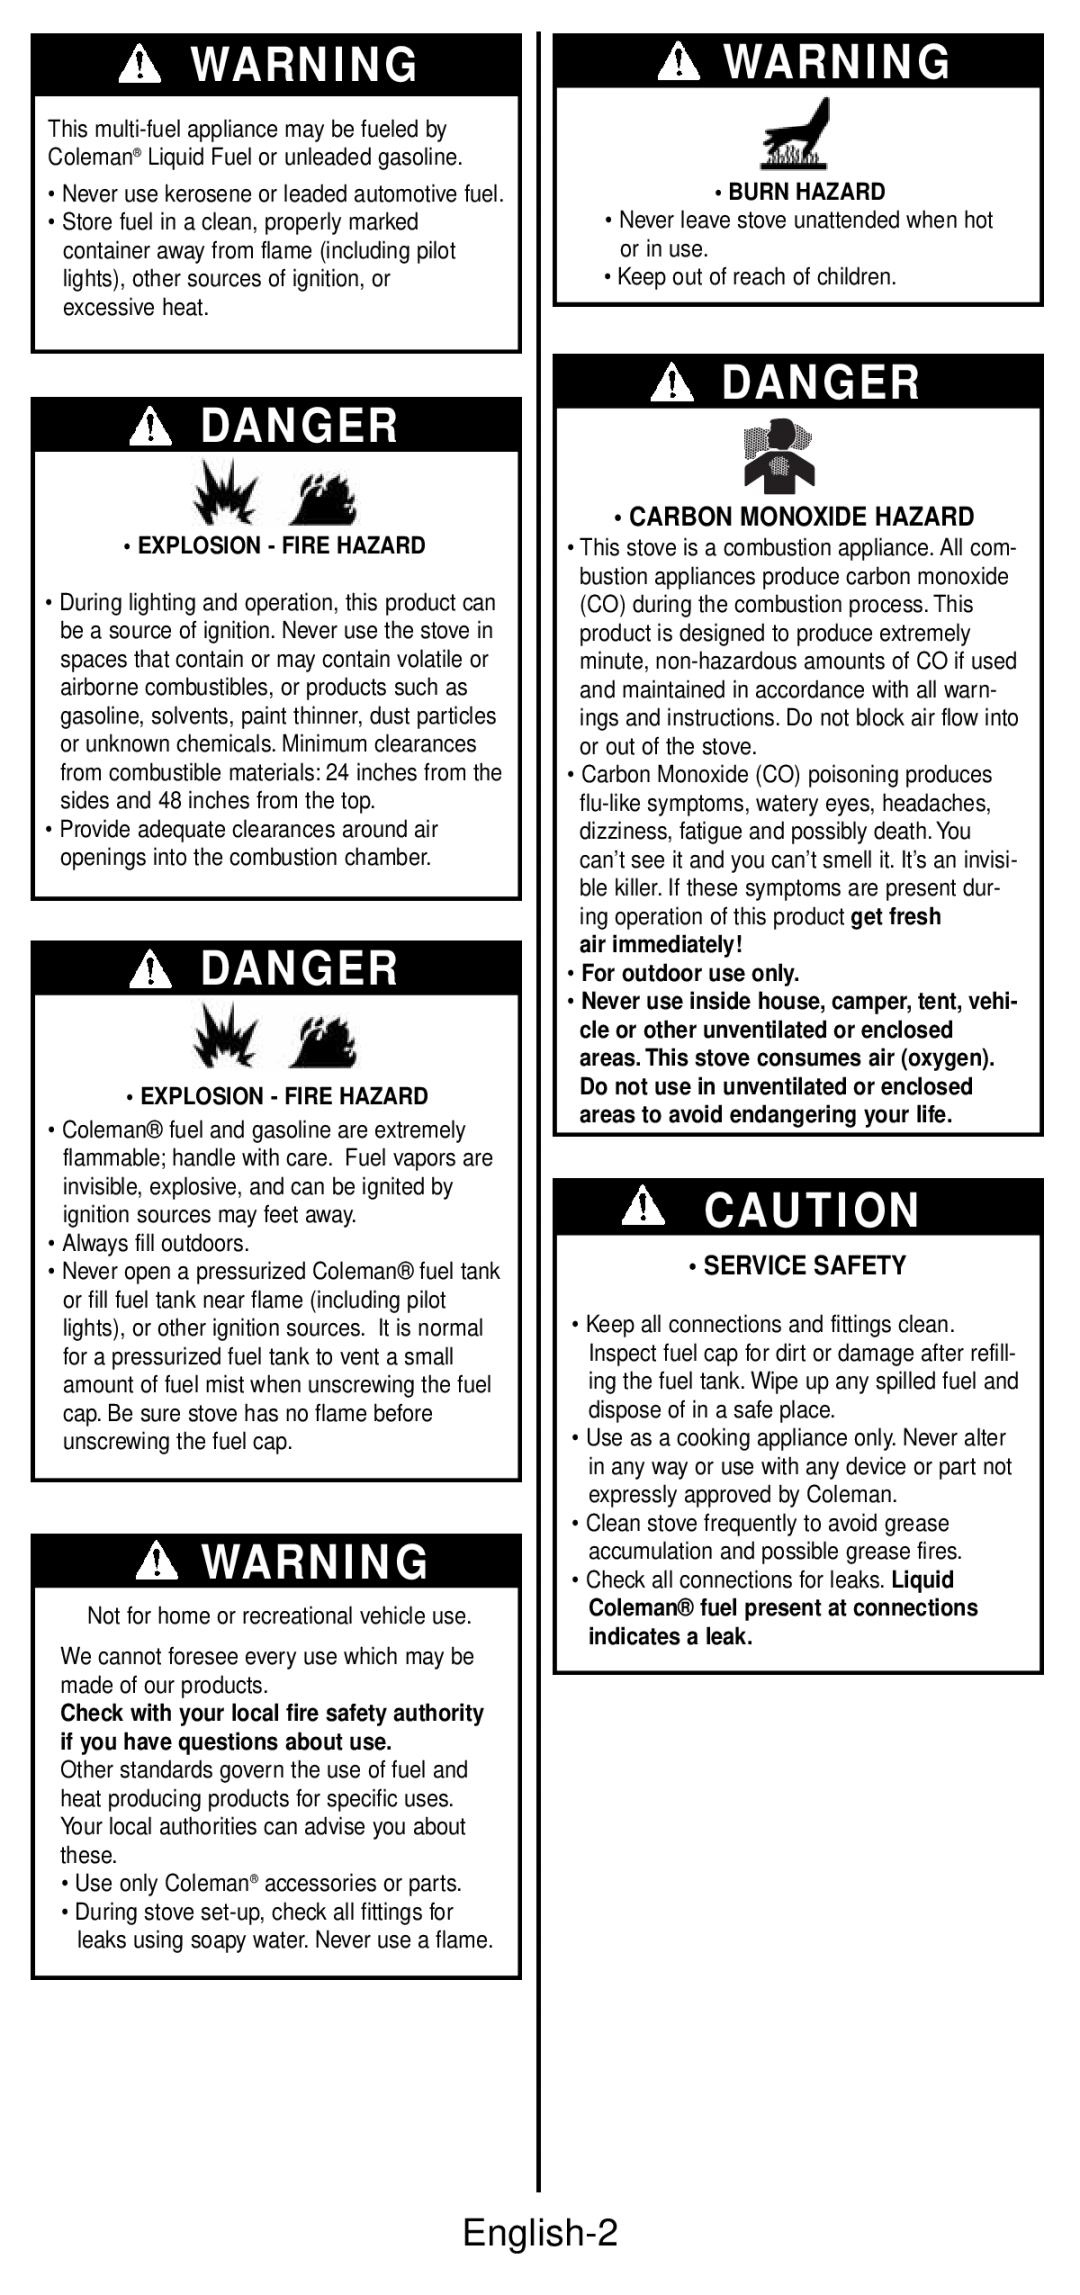 Coleman 533 Series Danger, English-2, Carbon Monoxide Hazard, Service Safety, Explosion - Fire Hazard, Burn Hazard 